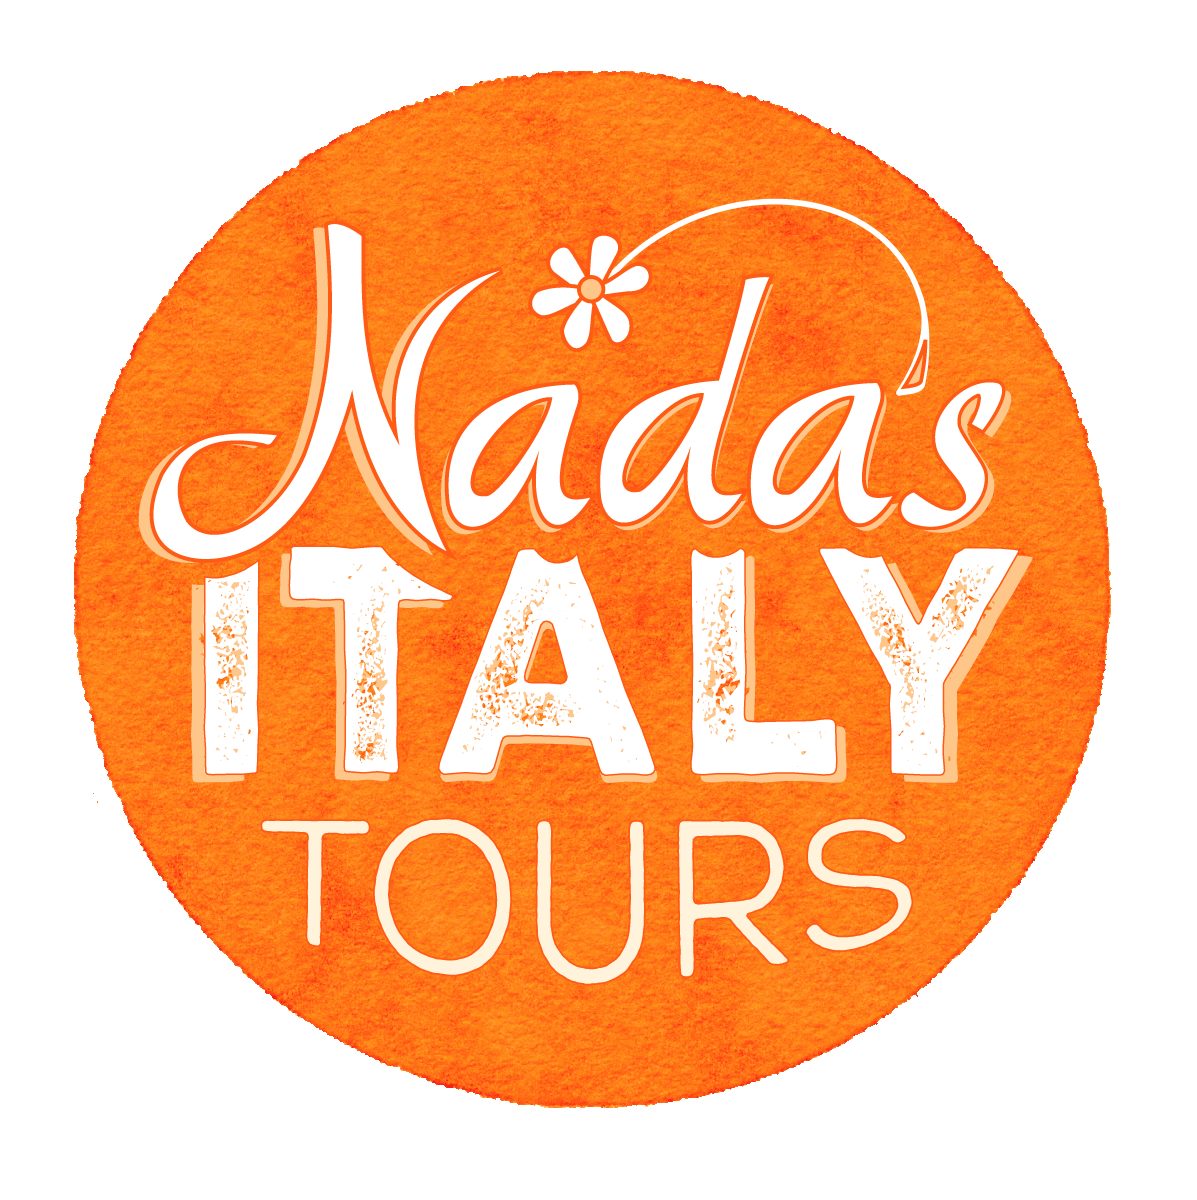 Nadas Italy Tours